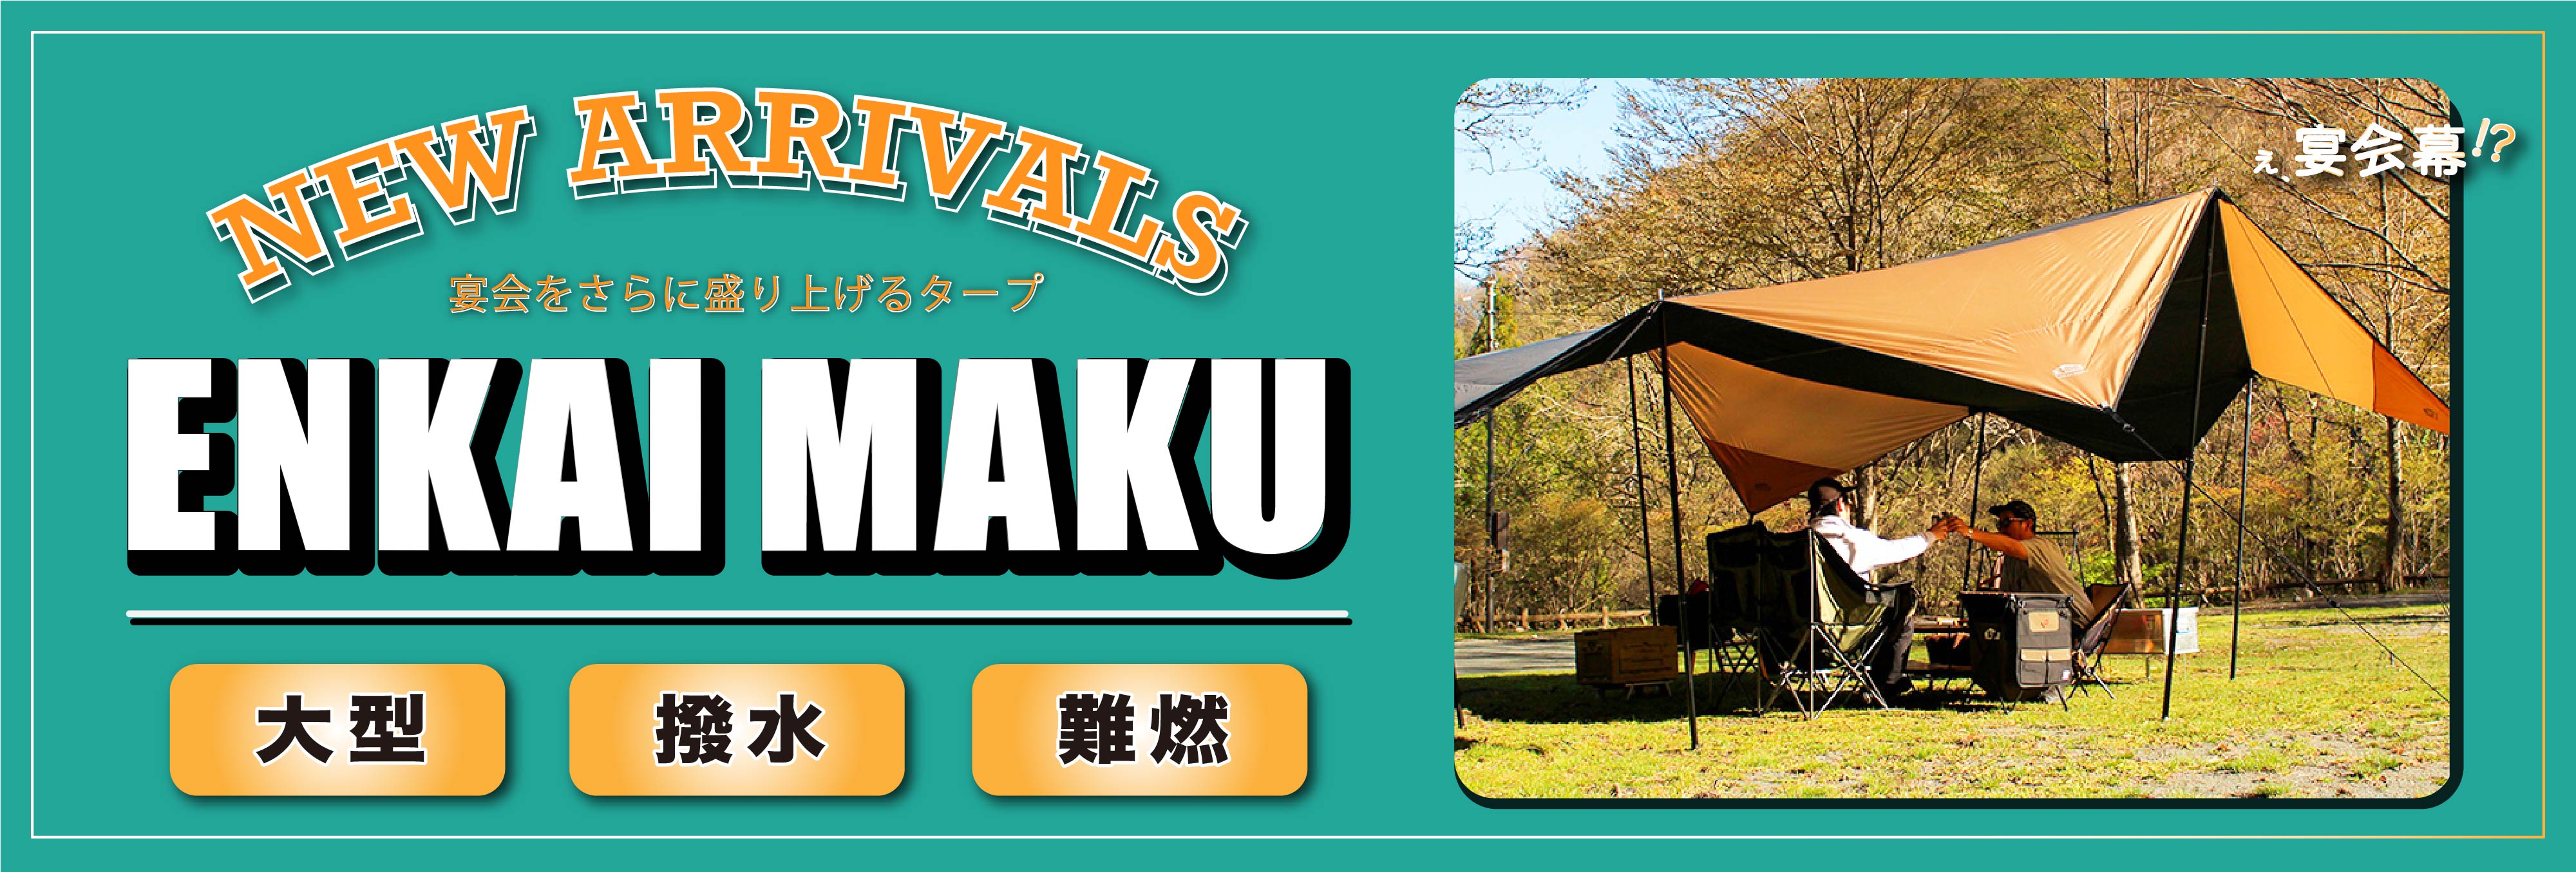 新商品 ENKAI MAKU (エンカイマク) 発売開始